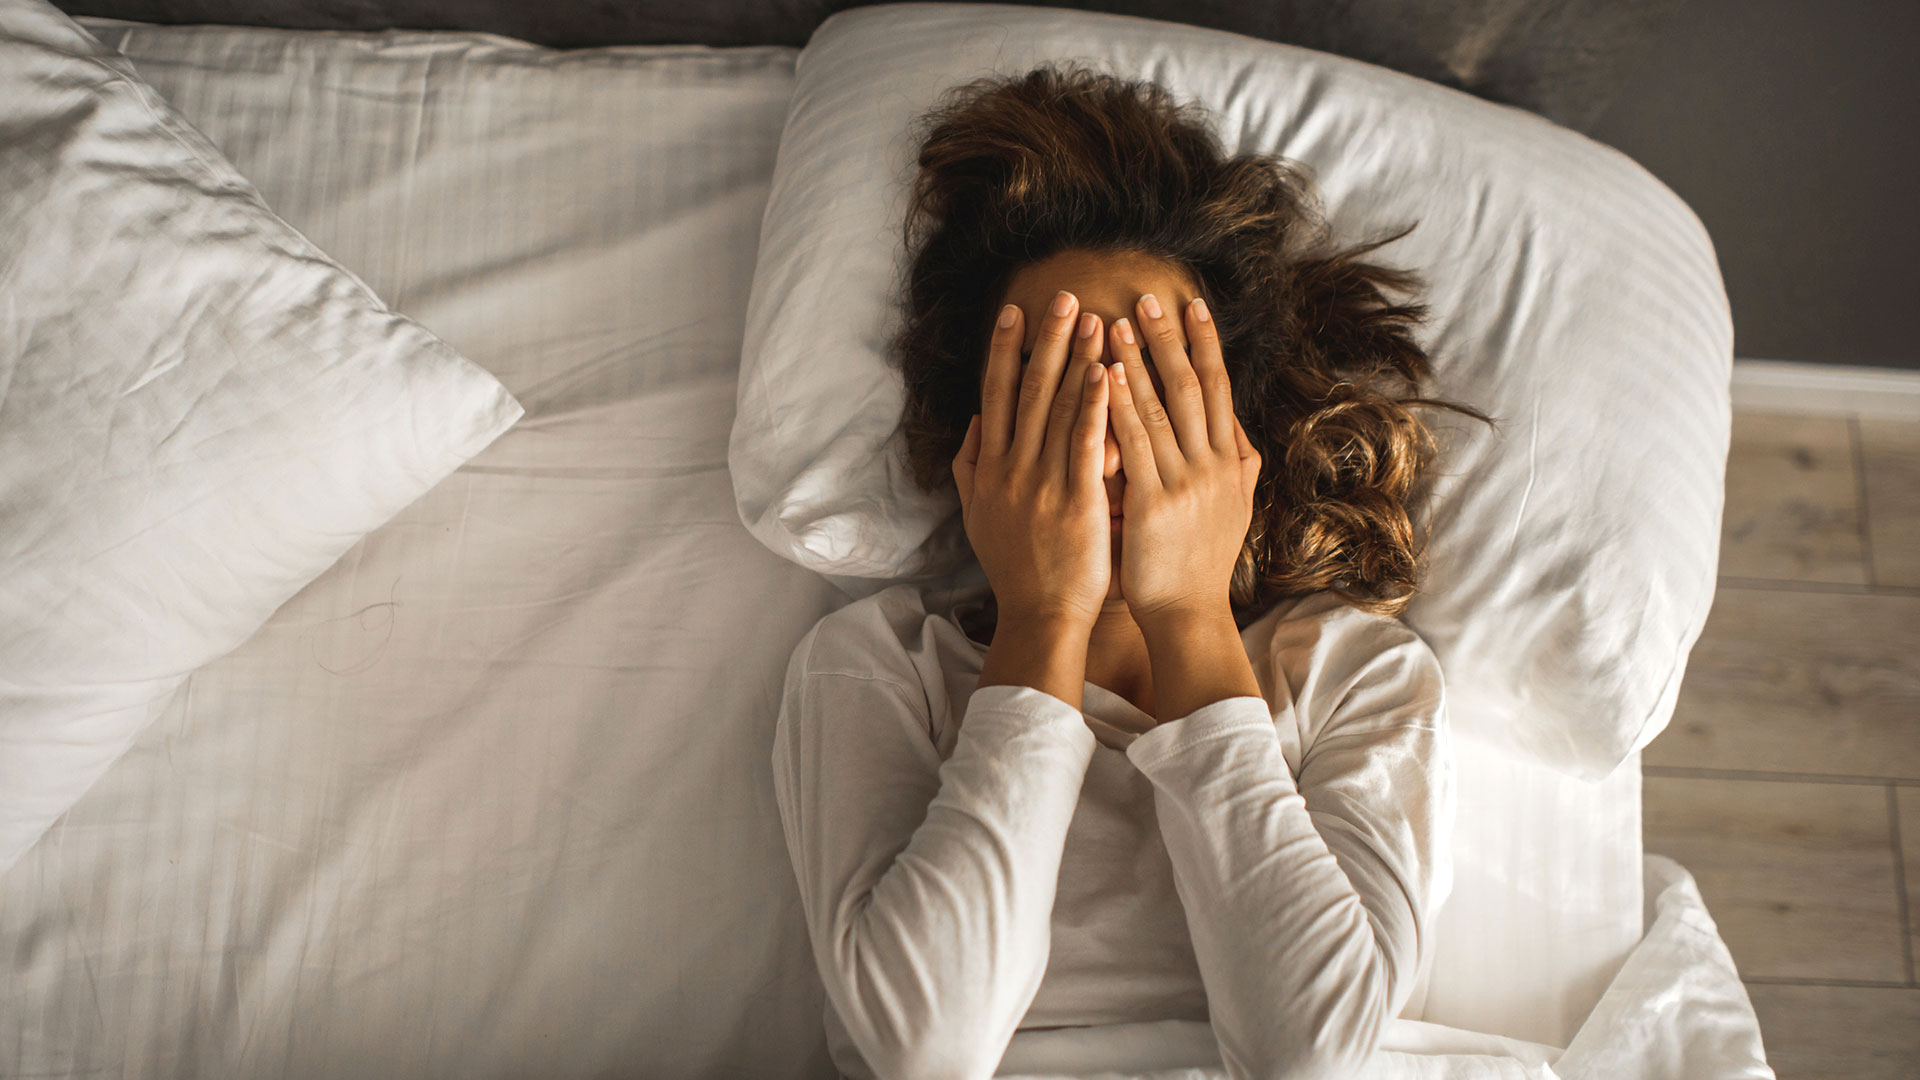 Existen algunos alimentos que pueden afectar negativamente a la calidad del sueño y que deberíamos evitar si queremos dormir mejor (Getty Images)
